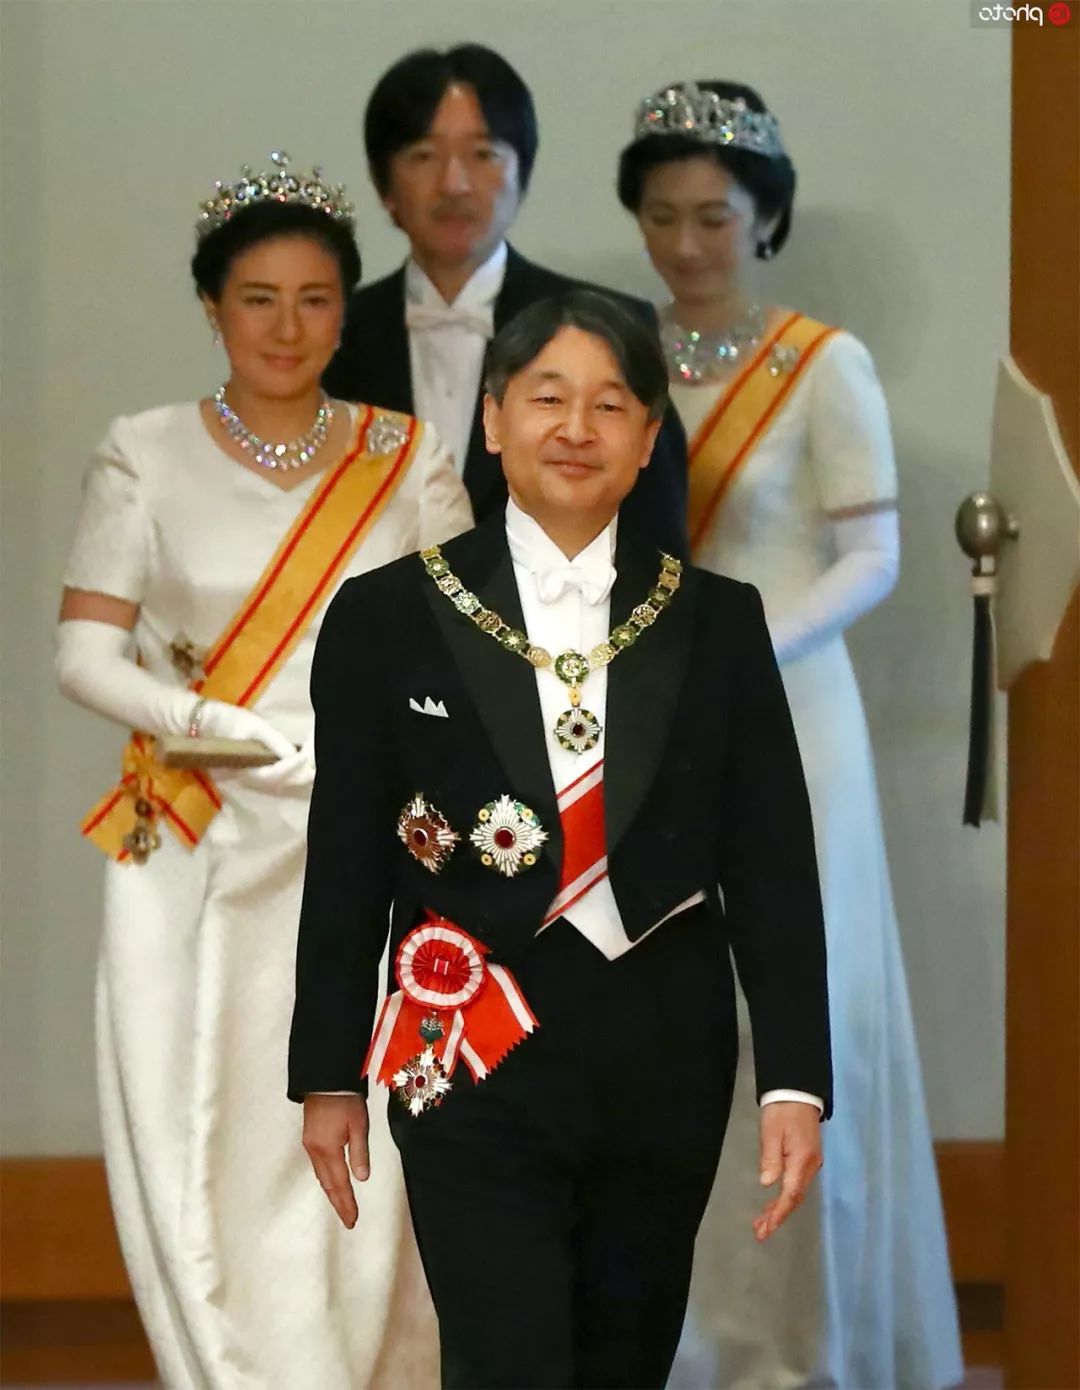 原创 日本新皇54岁弟弟成王储,不仅没笑容,还建议德仁自掏腰包即位